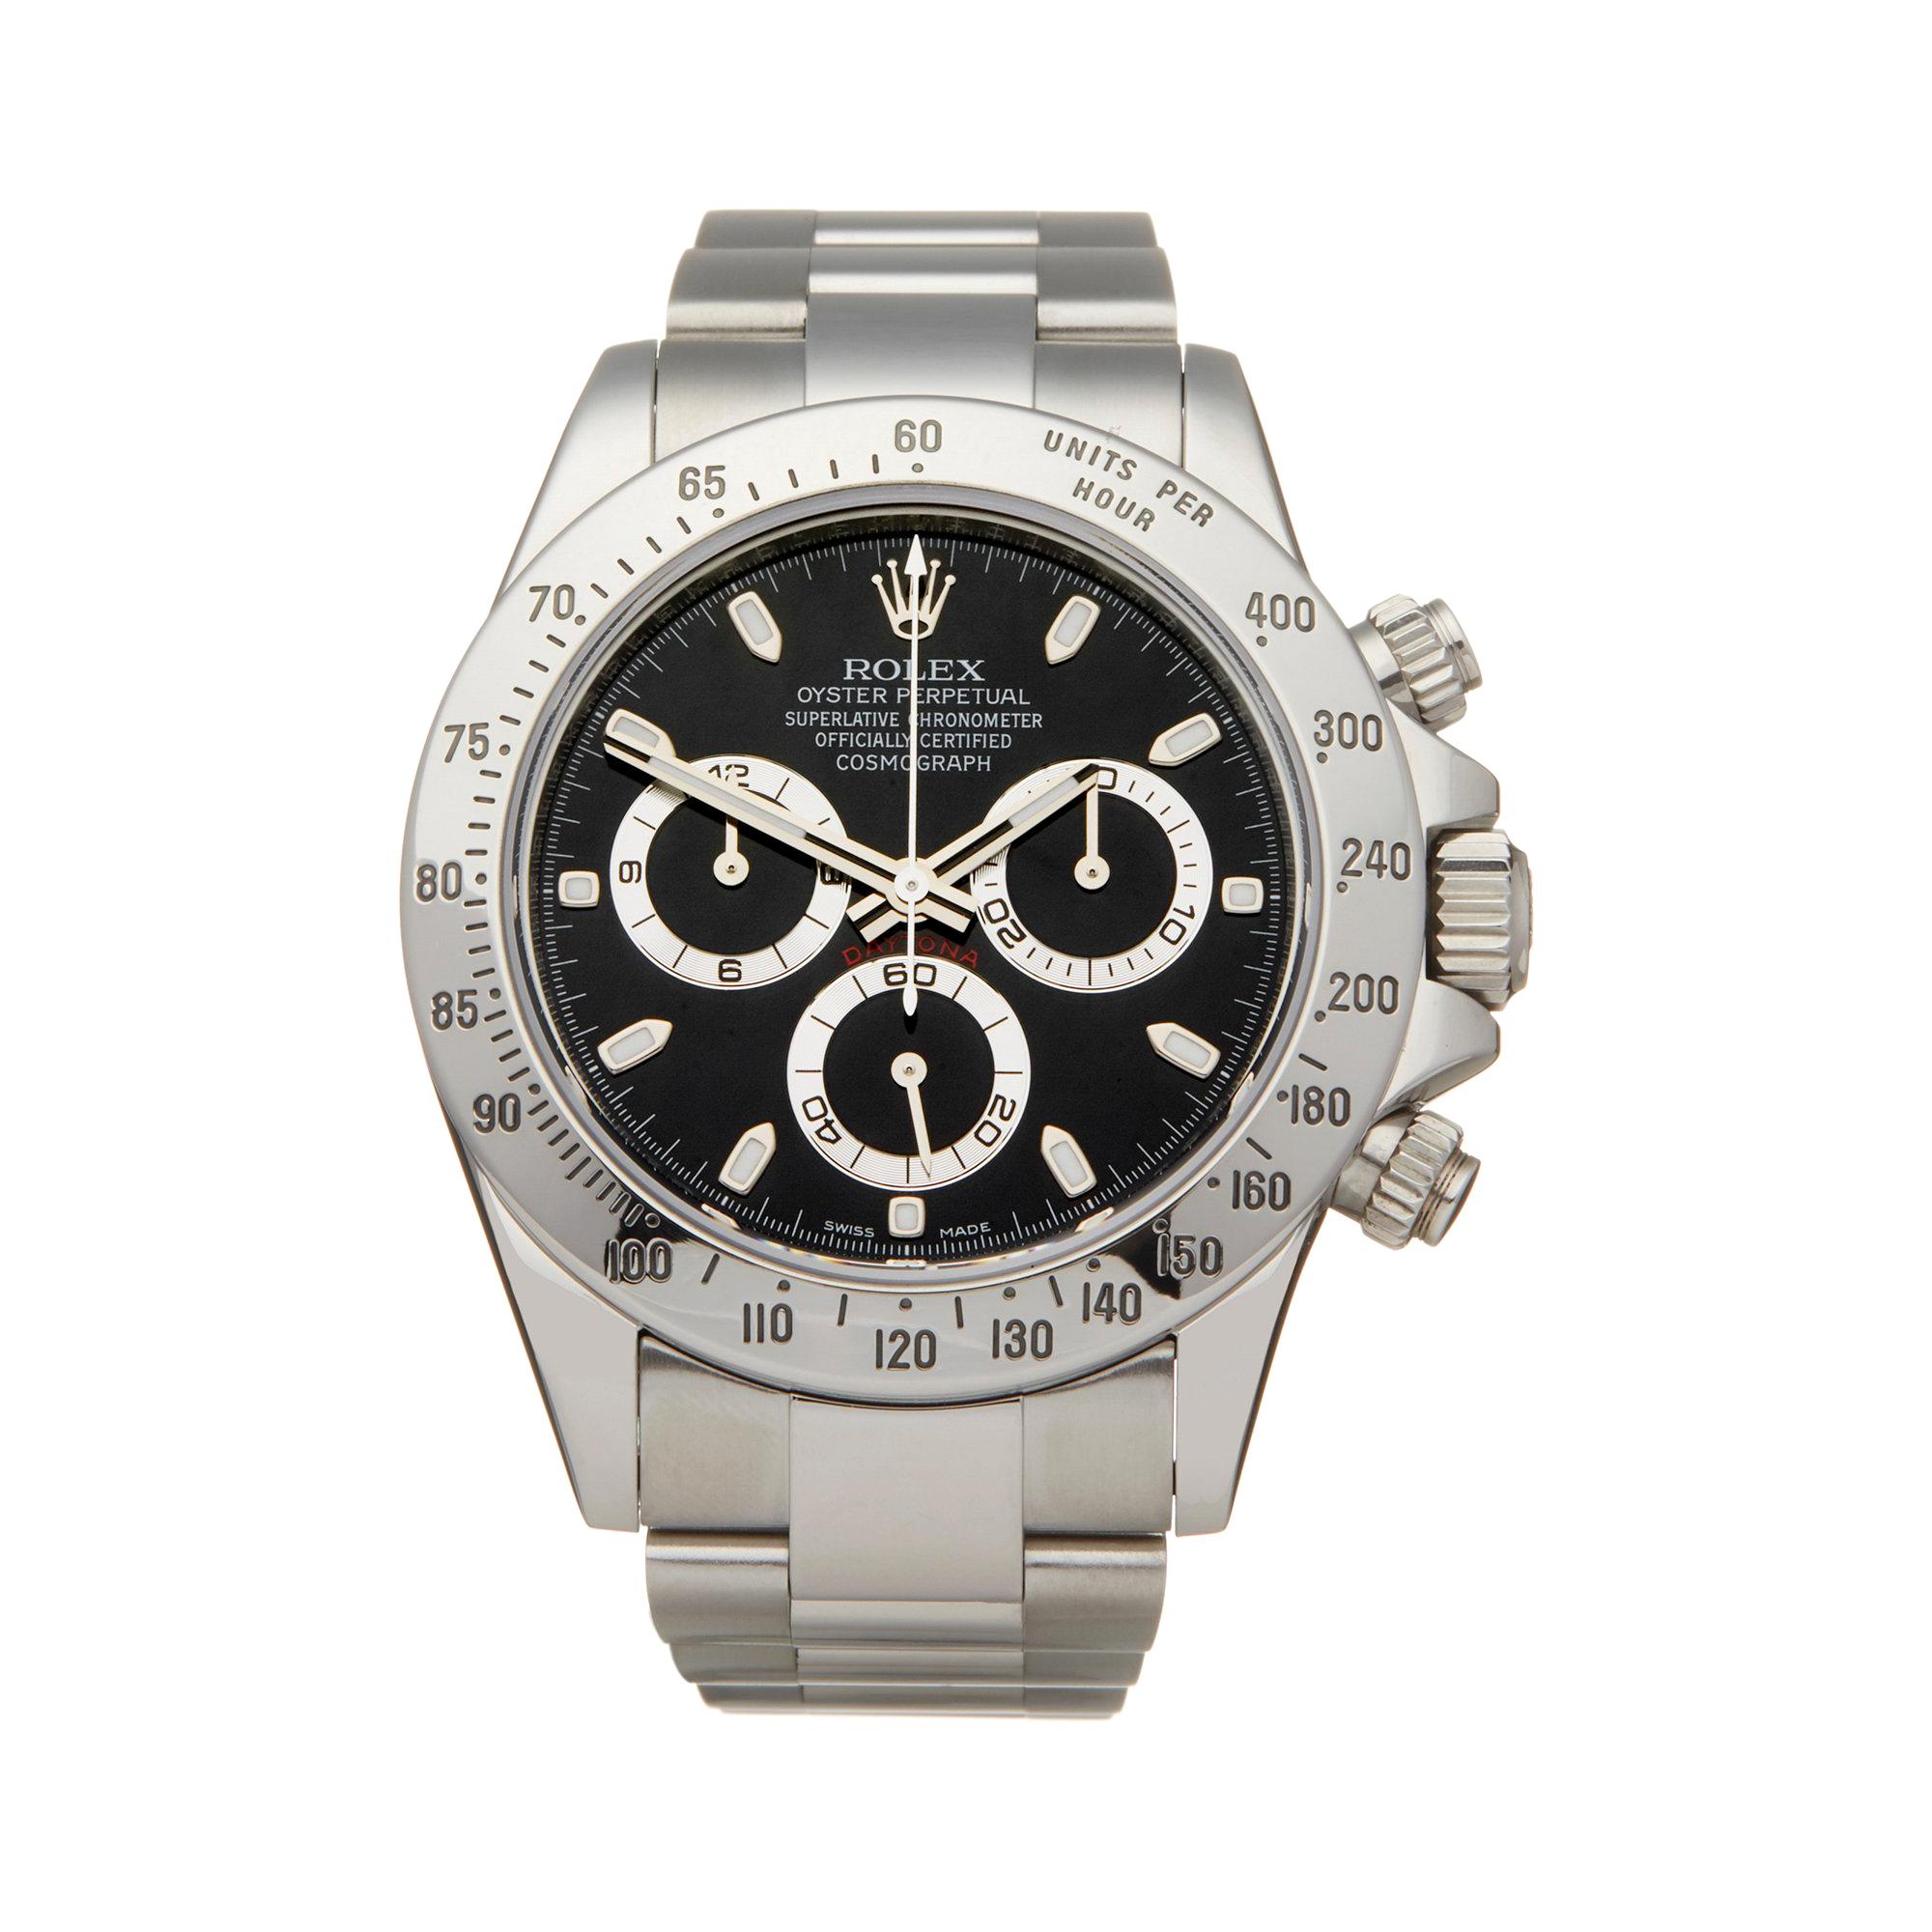 Rolex Daytona Stainless Steel 116520 Wristwatch